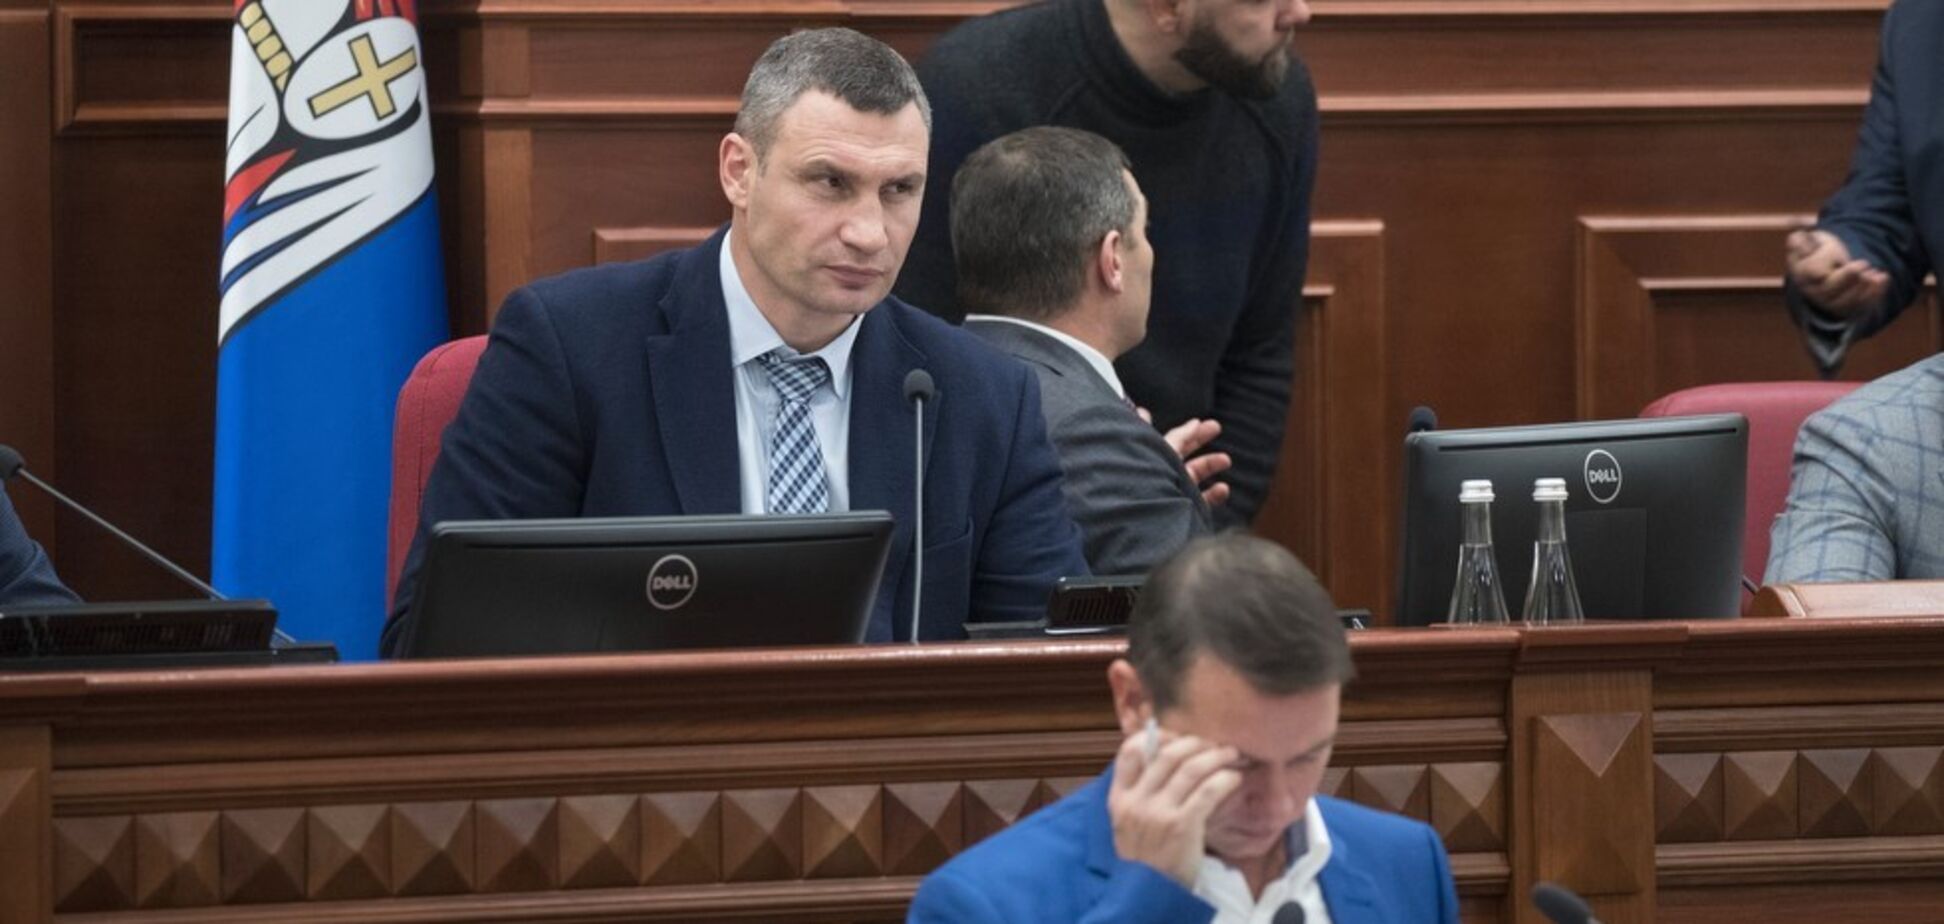 Кличко: принятый бюджет-2019 обеспечит дальнейшее развитие столицы и учтет интересы всех киевлян